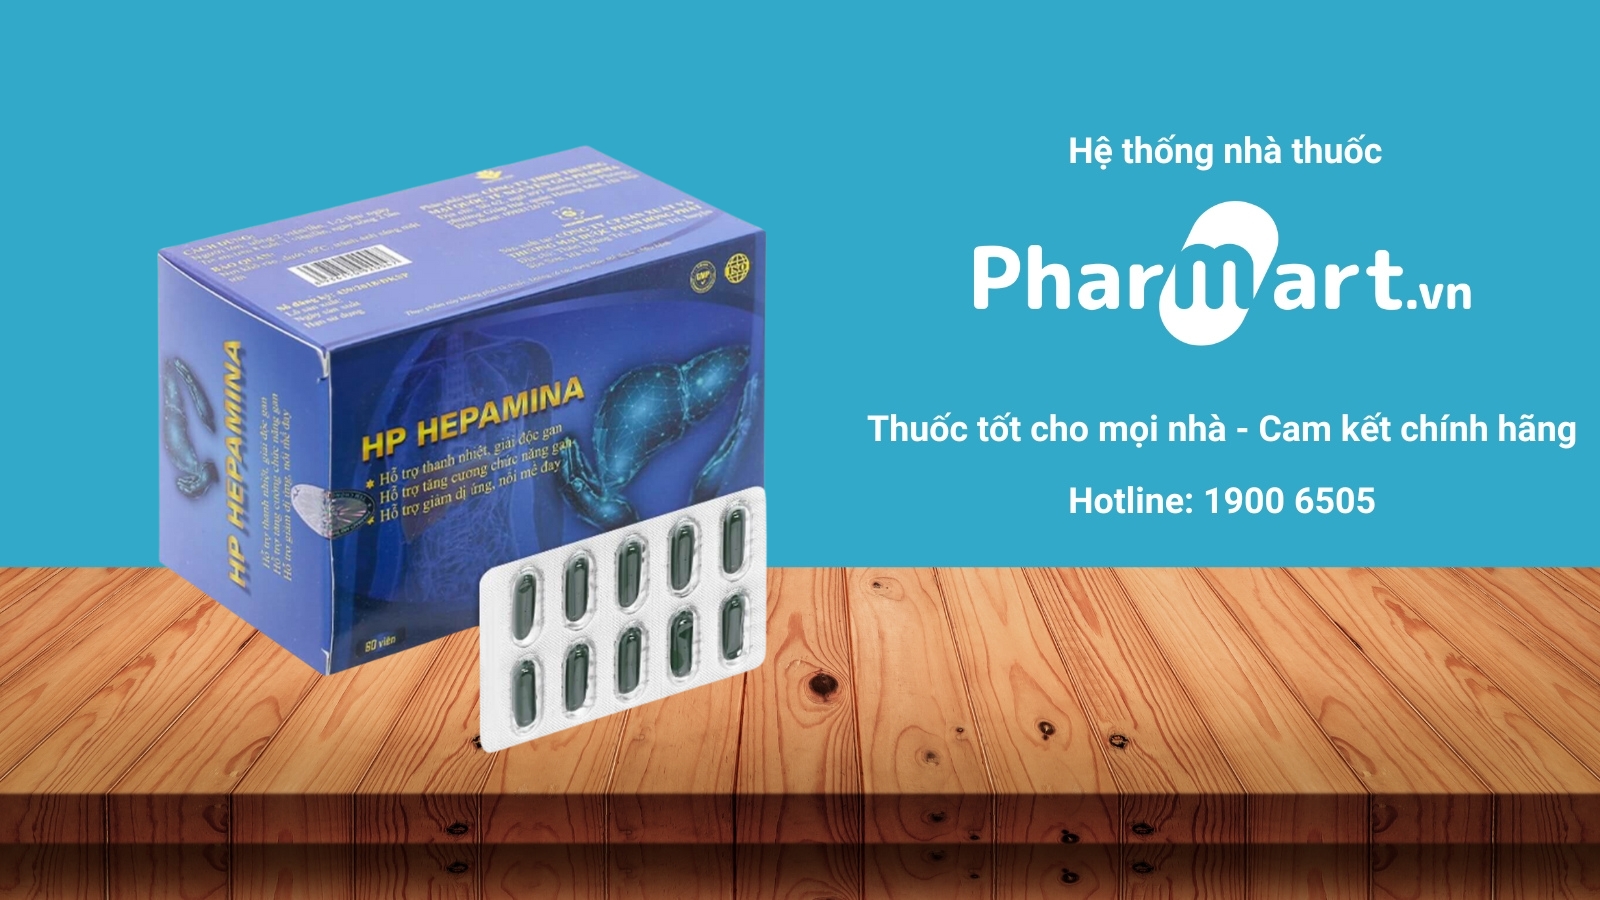 Pharmart chuyên cung cấp các sản phẩm chính hãng